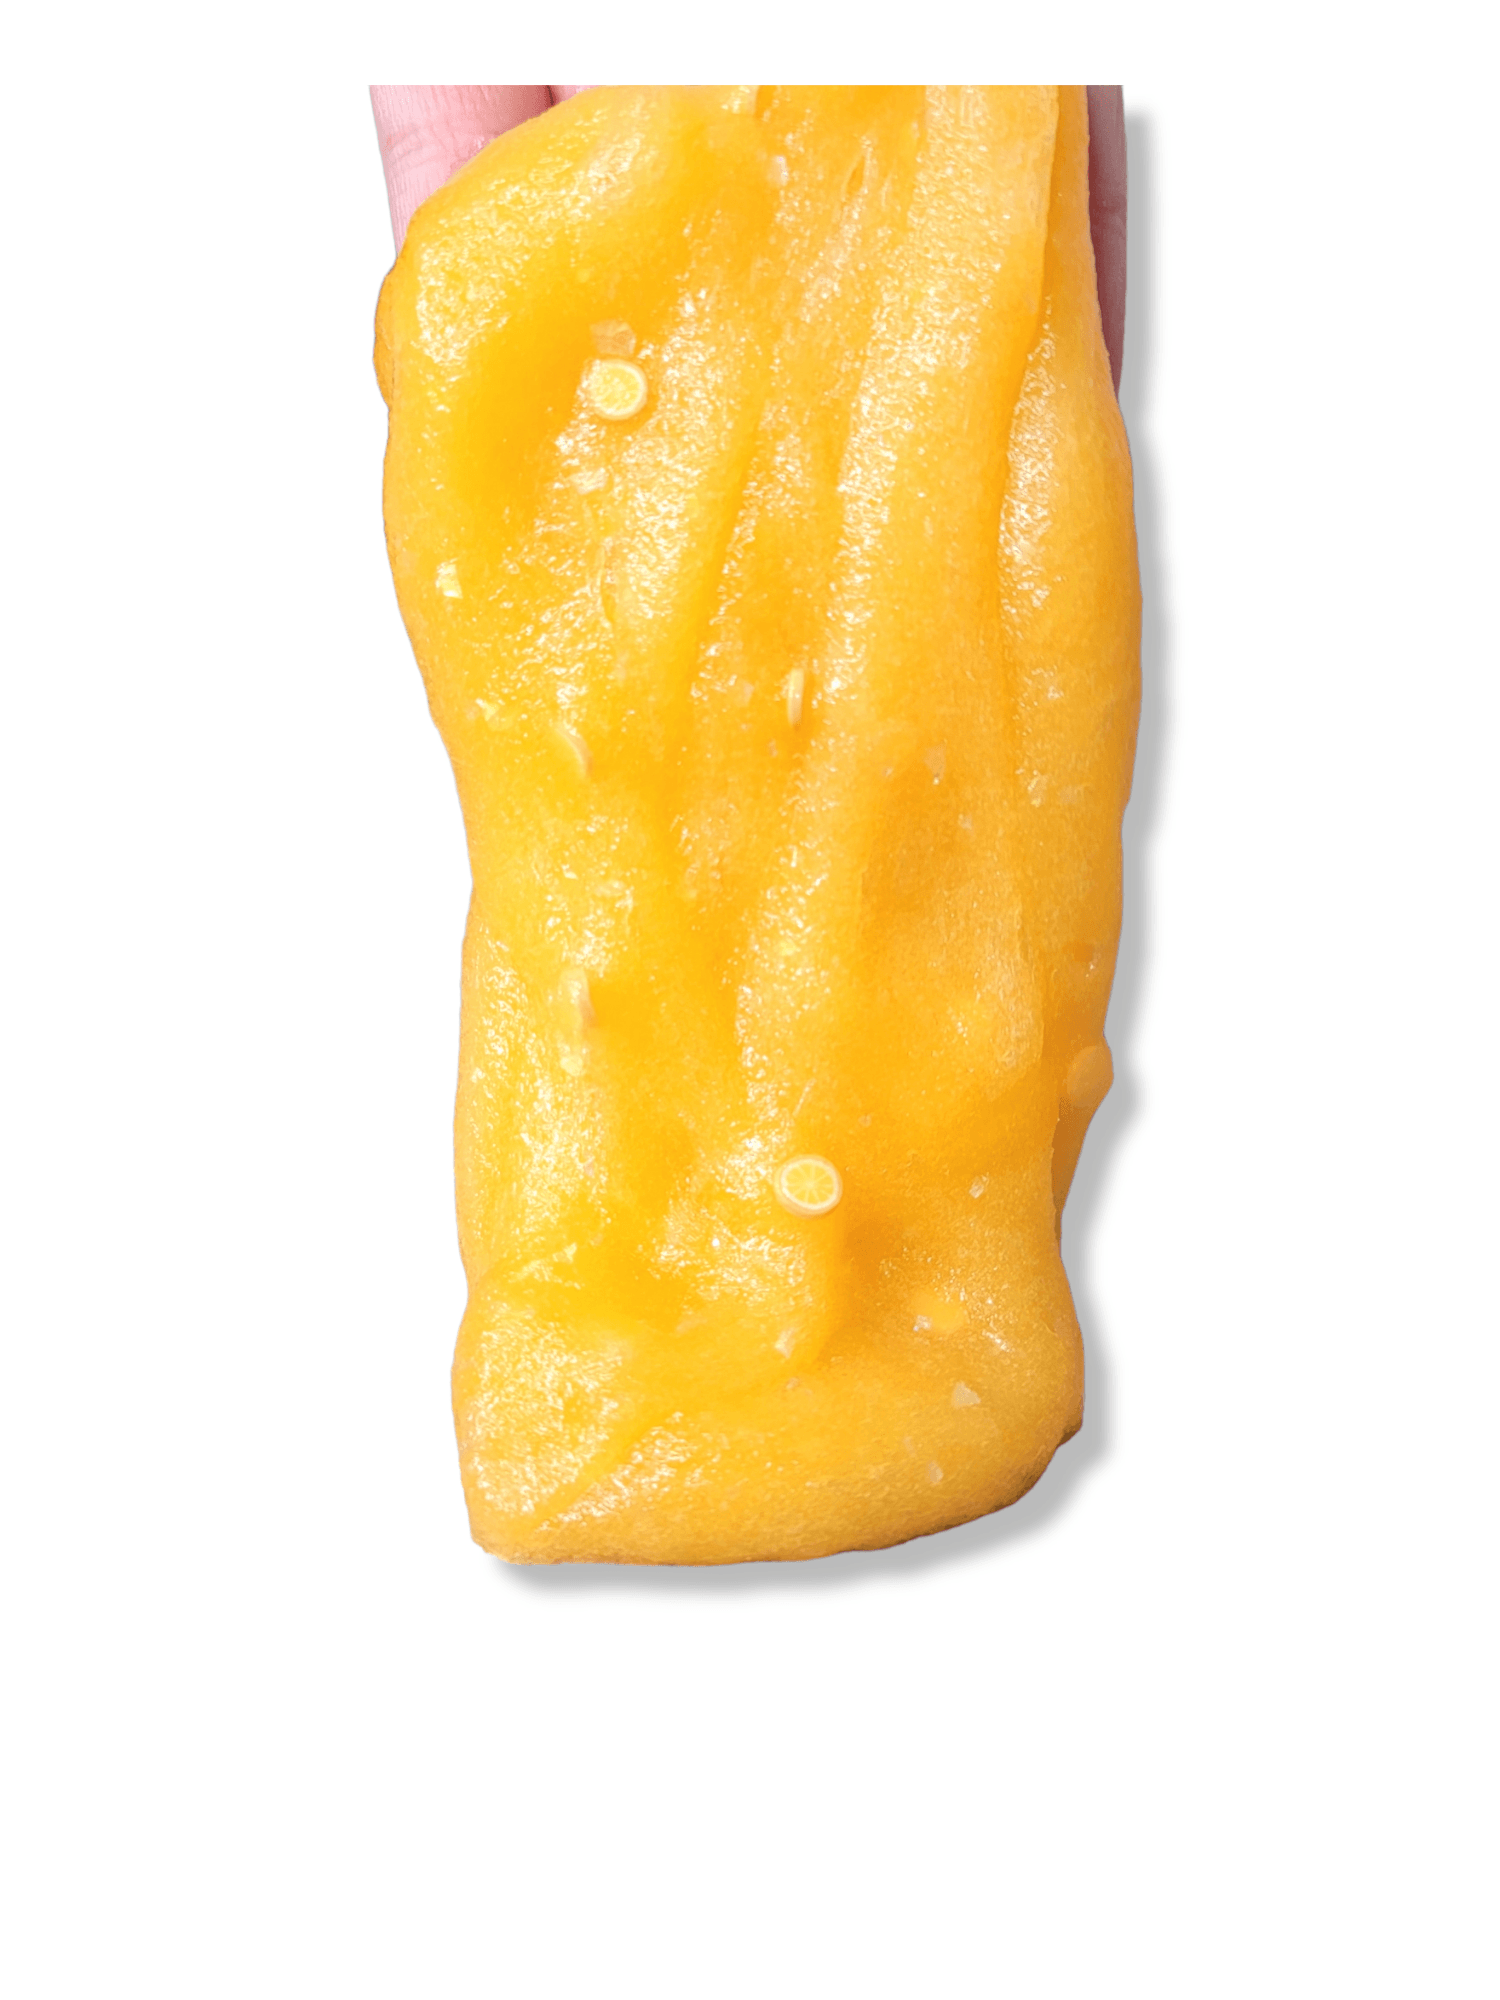 Fizzy Orange Soda Handmade Scented Jelly Slime Slime by Hoshimi Slimes LLC | Hoshimi Slimes LLC